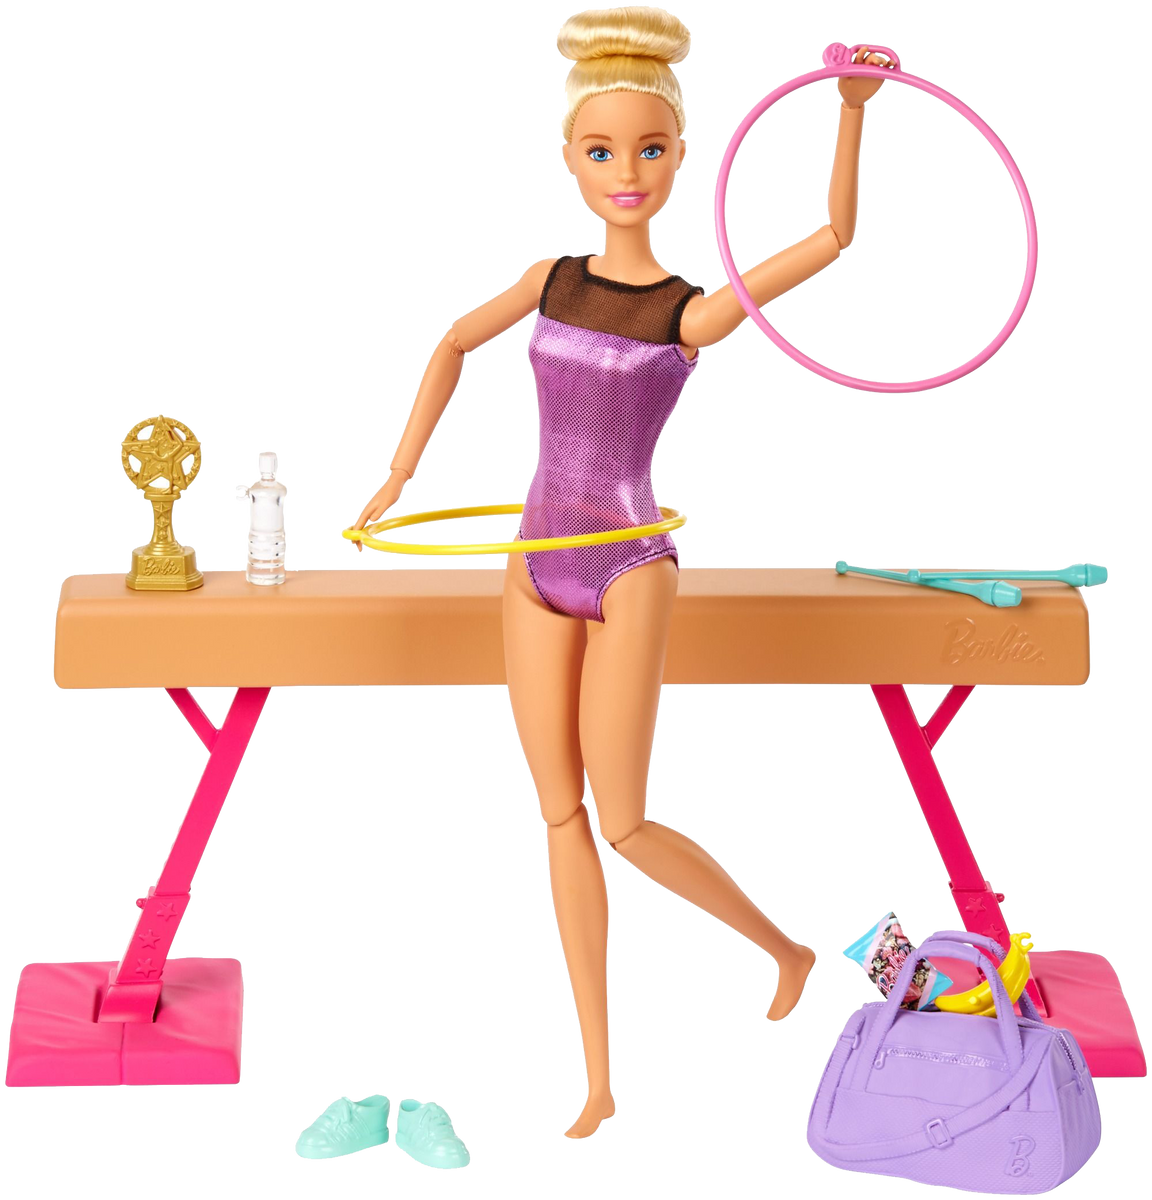 Barbie Gymnastics – Humpty Dumpty Toys